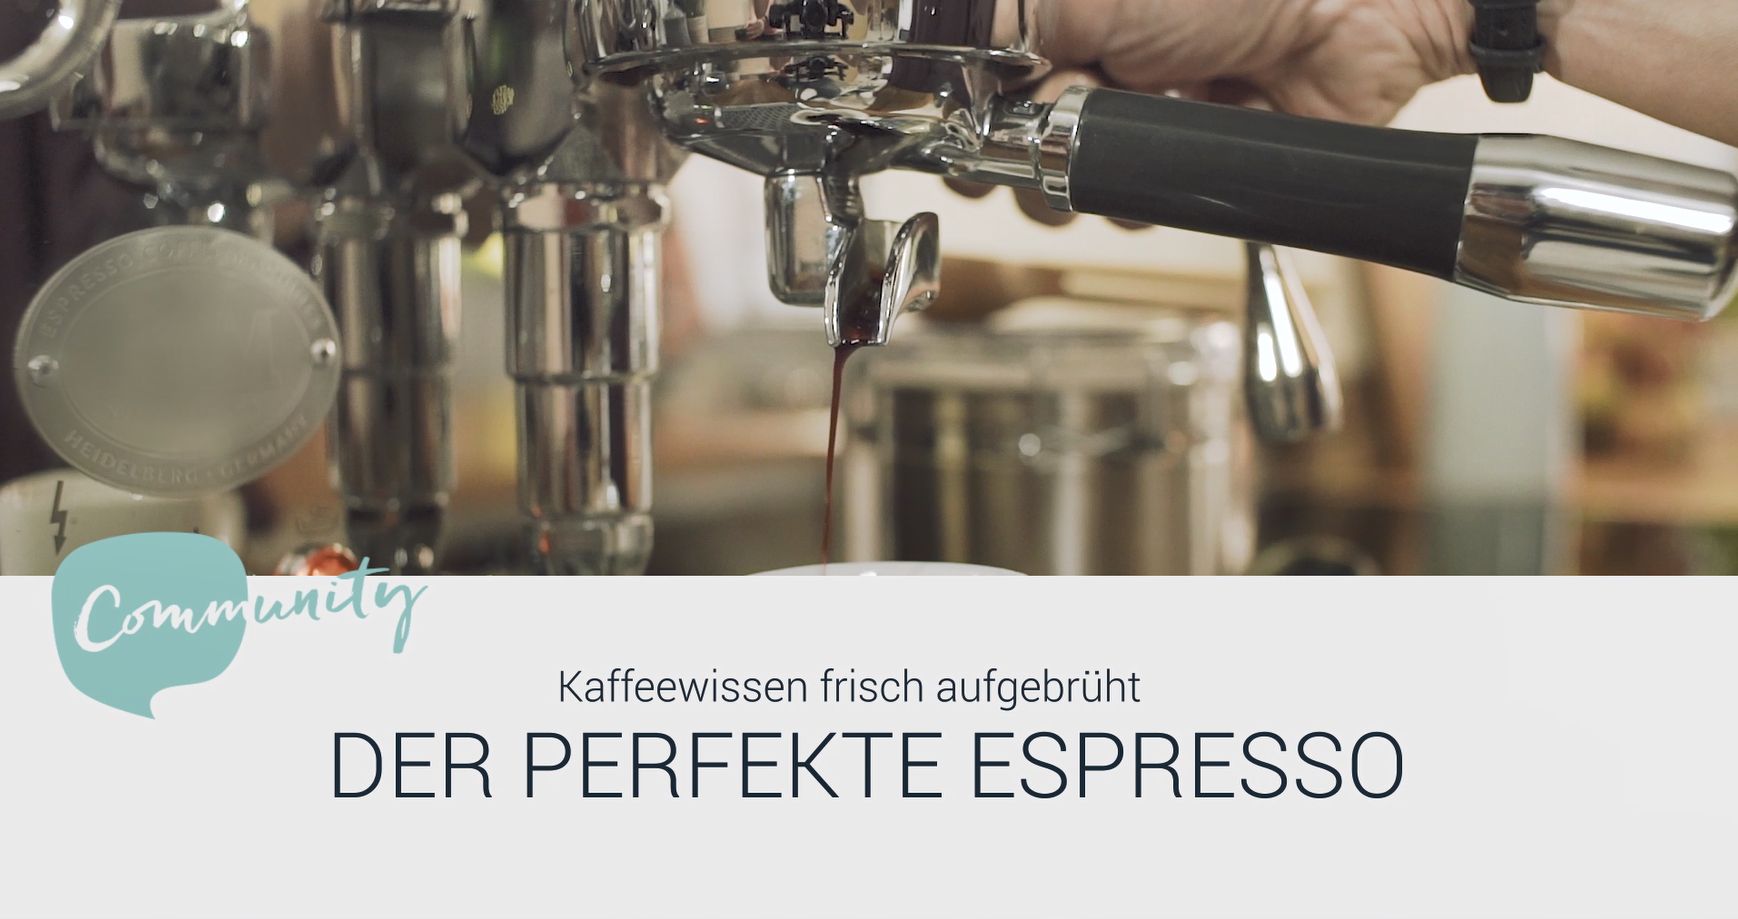 Espresso ☕: Alles über die Kaffeespezialität | TCHIBO